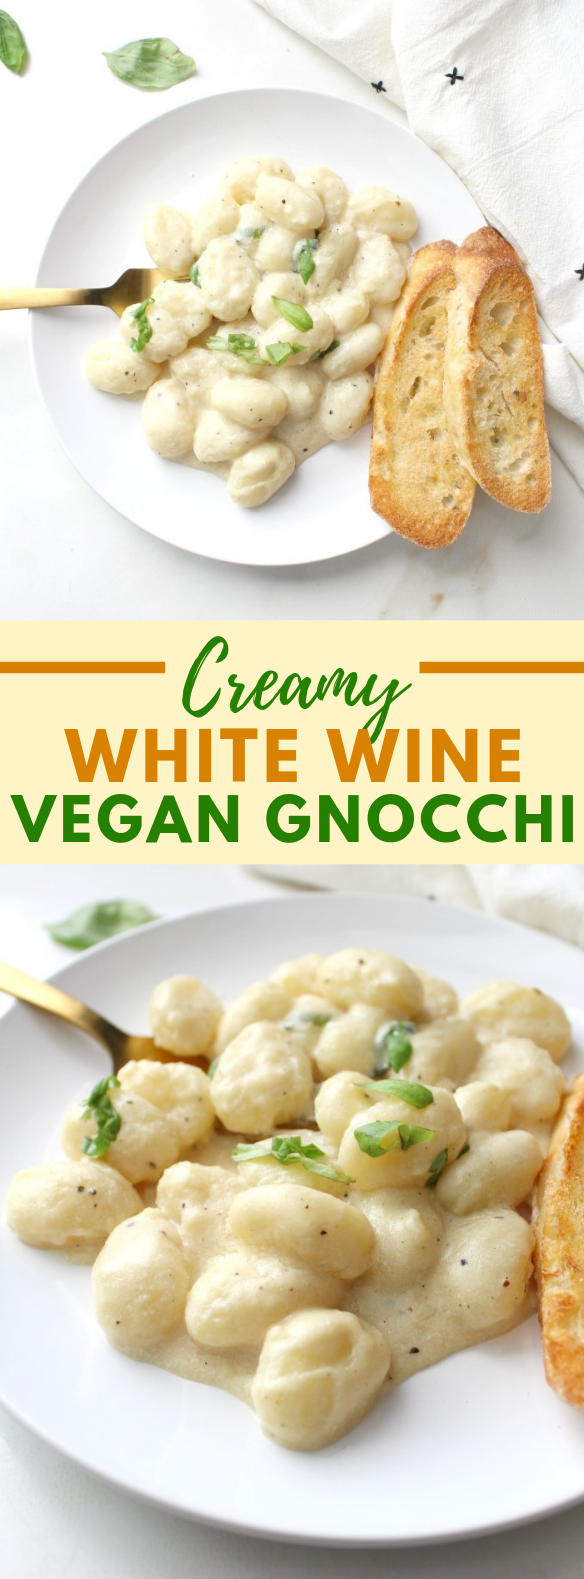 CREAMY WHITE WINE VEGAN GNOCCHI #simplemeal #veganrecipes